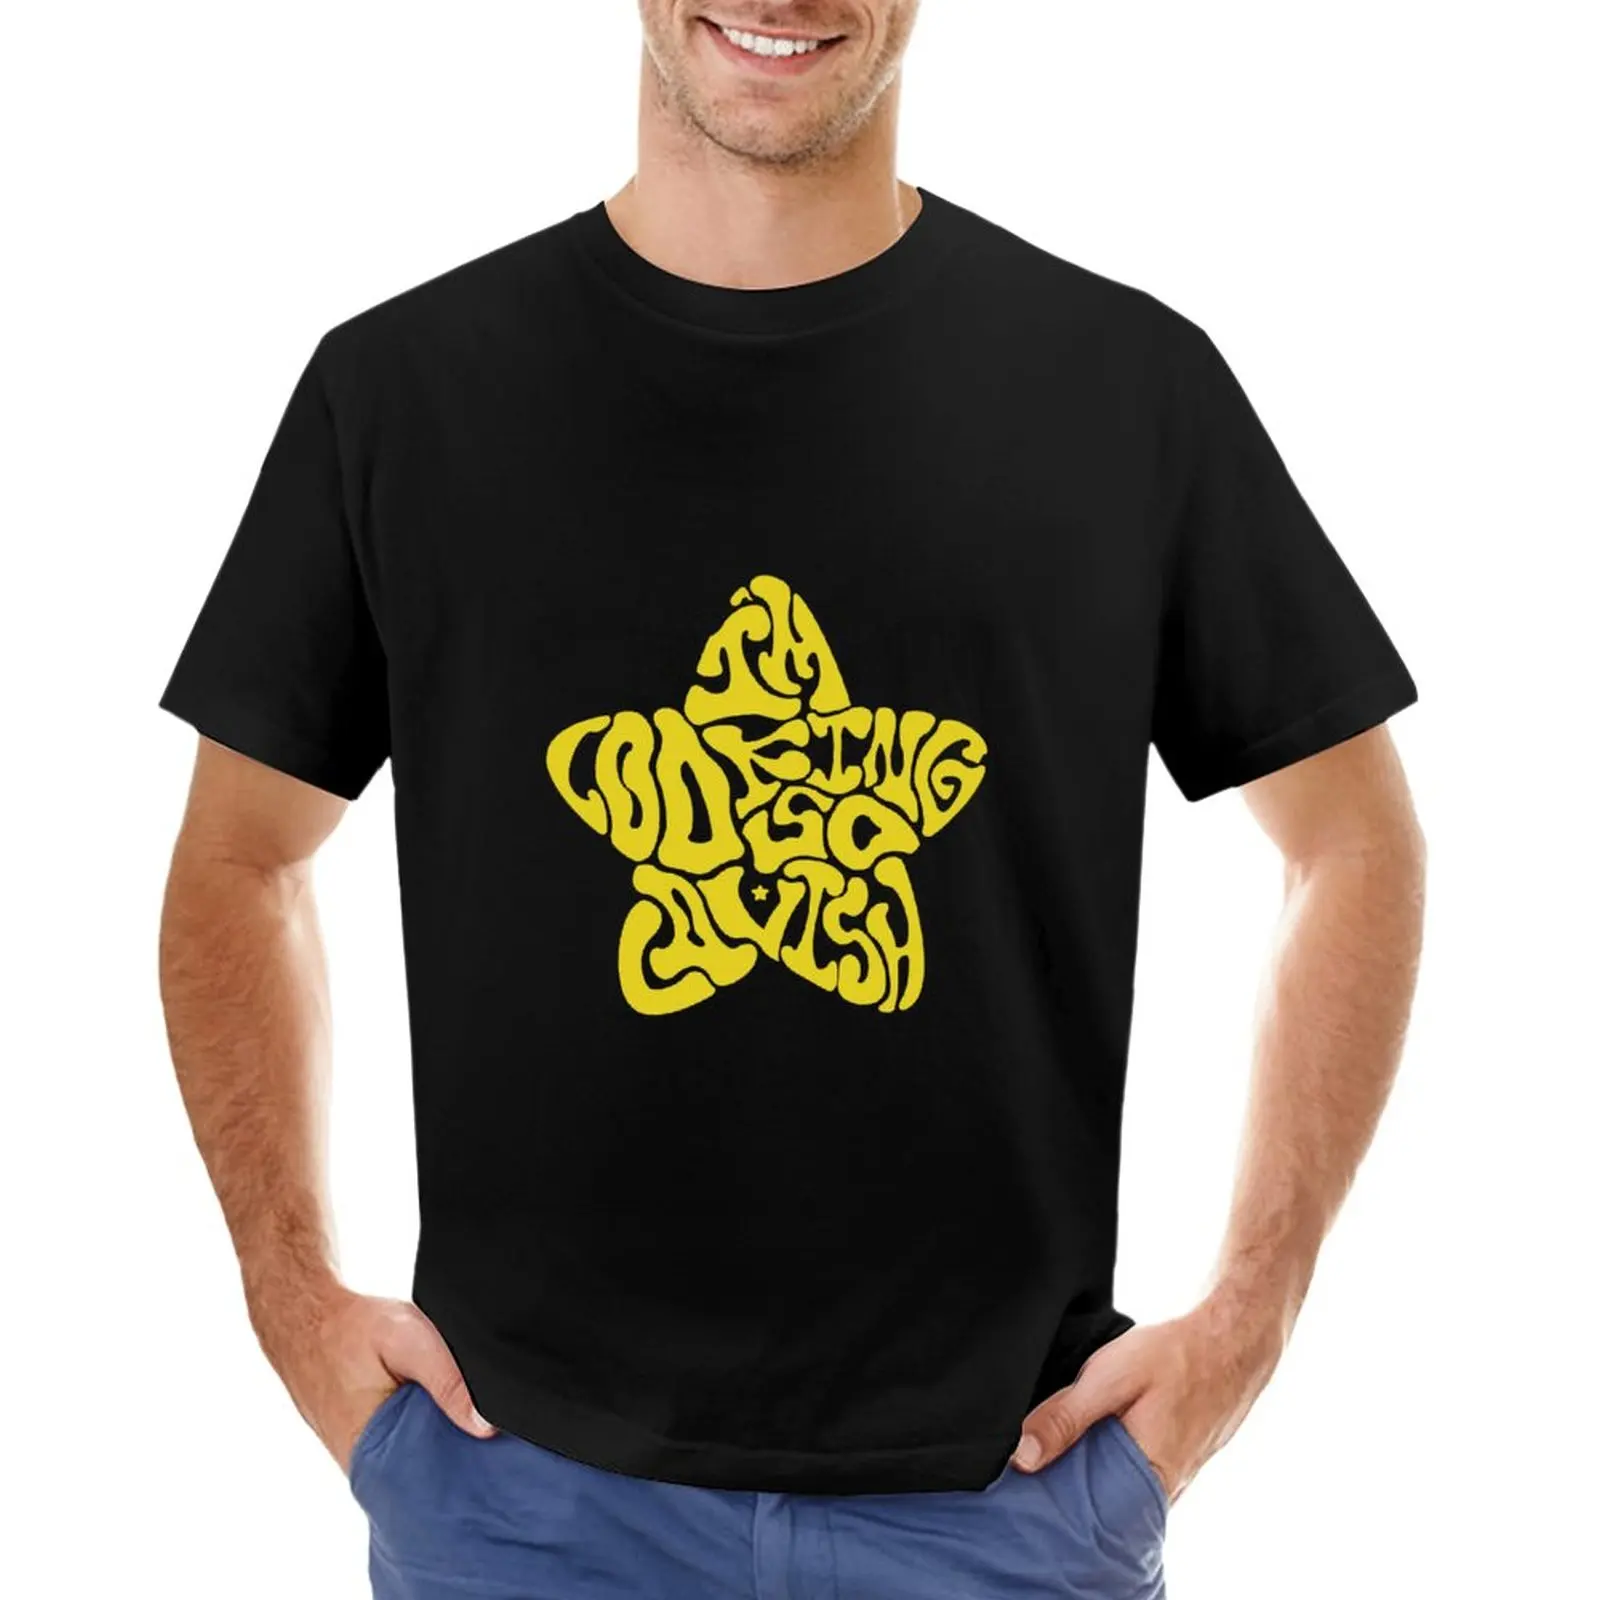 Футболка с надписью XG Shooting Star, черная футболка, футболки с графическим рисунком, футболки для любителей спорта, тренировочные рубашки для мужчин